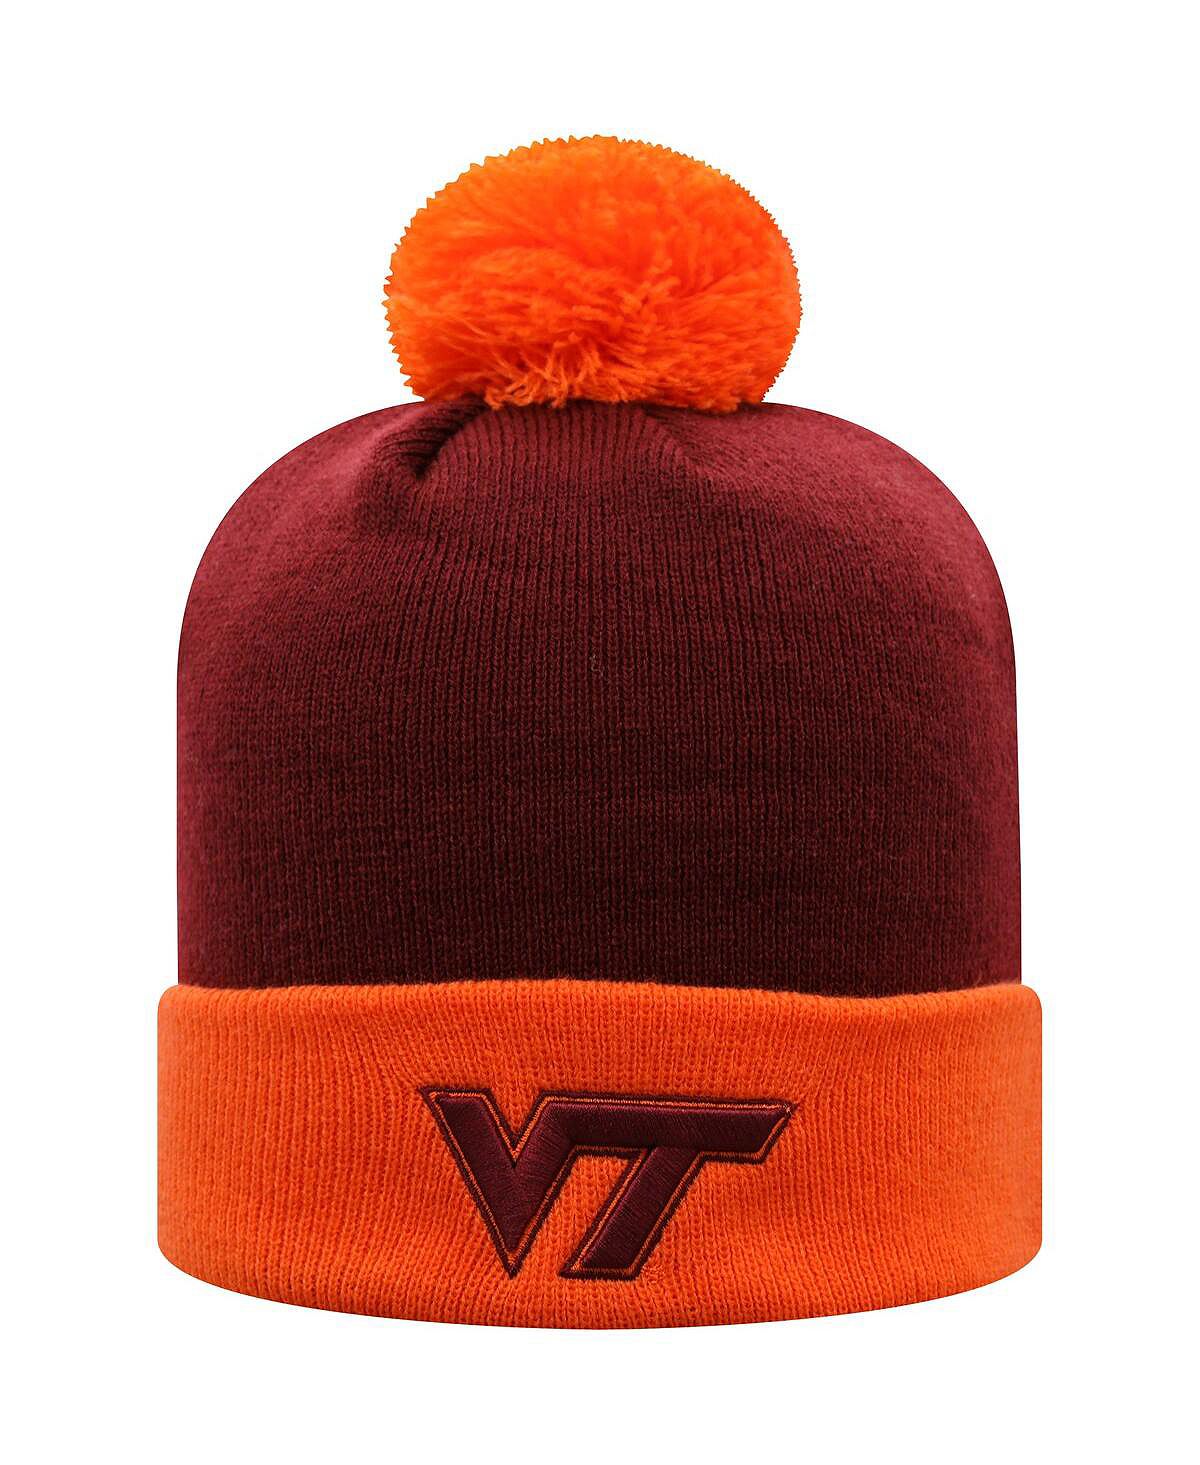 Мужская темно-бордовая и оранжевая вязаная шапка Virginia Tech Hokies Core, двухцветная с манжетами и помпоном Top of the World